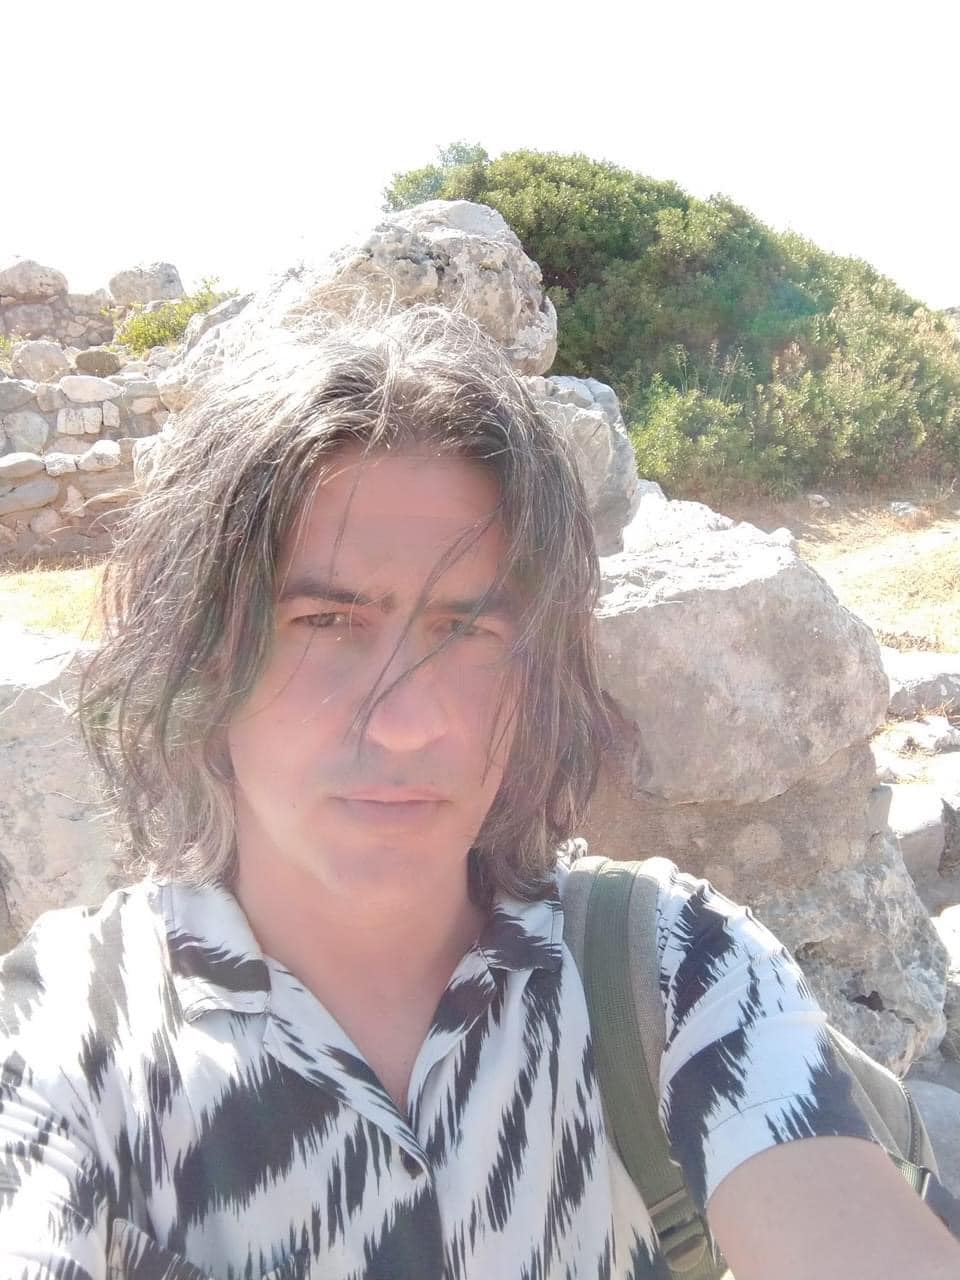 Θλίψη για τον θάνατο του αρχαιολόγου Γιώργου Παπαζαφειρίου